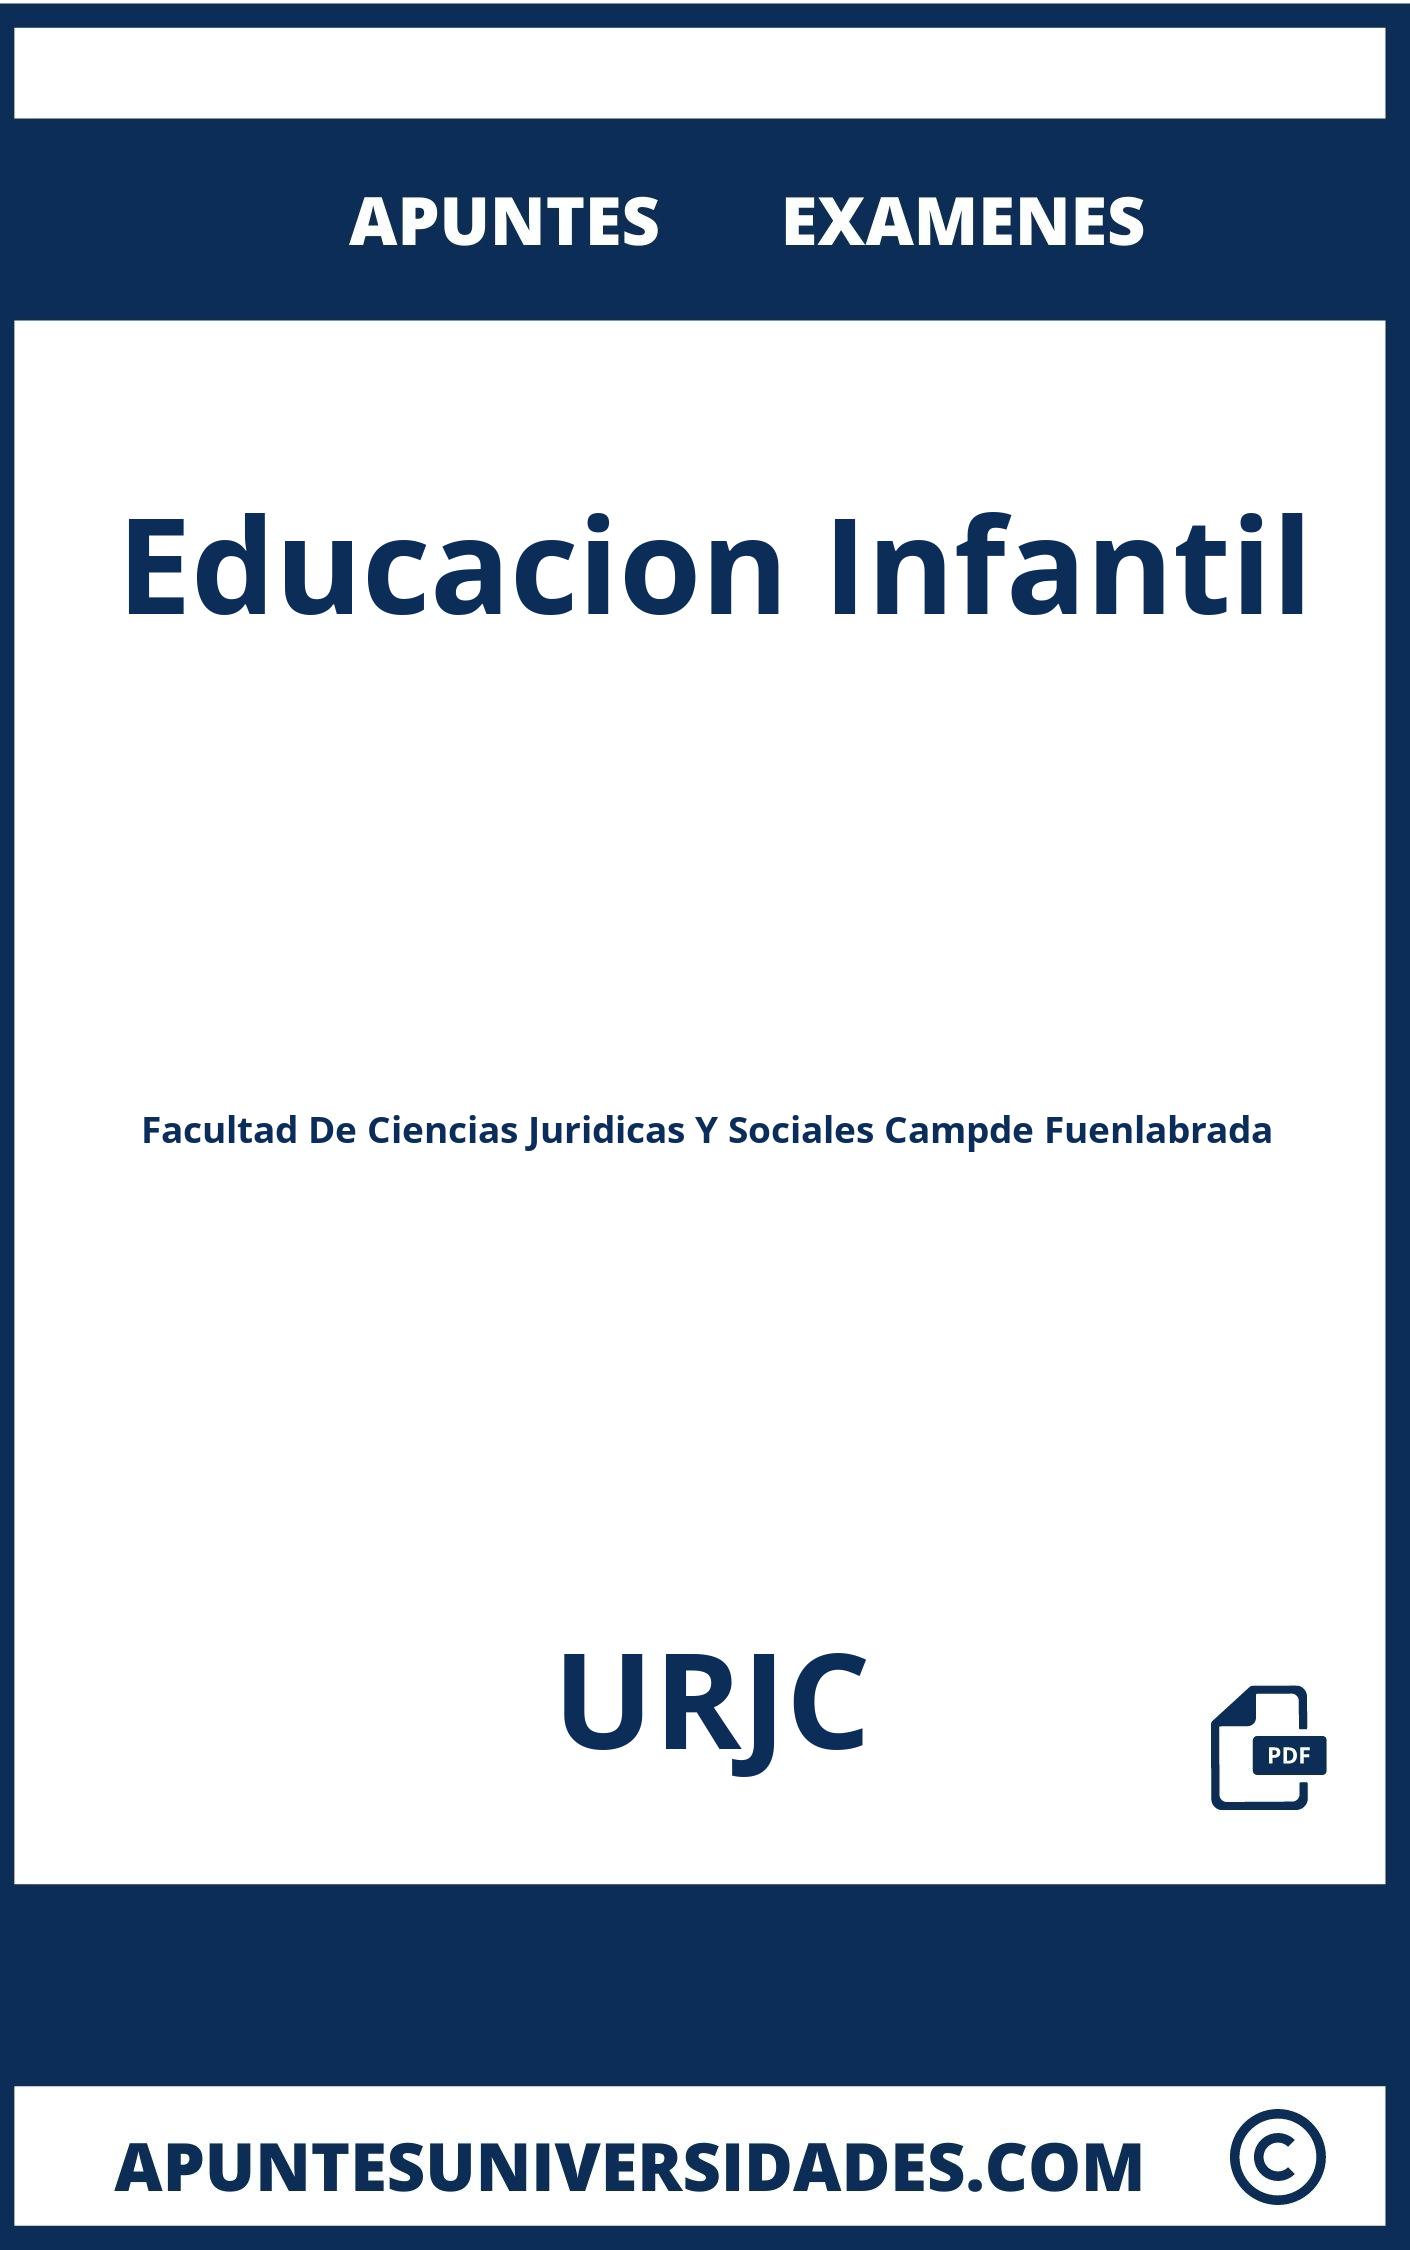 Apuntes Educacion Infantil URJC y Examenes